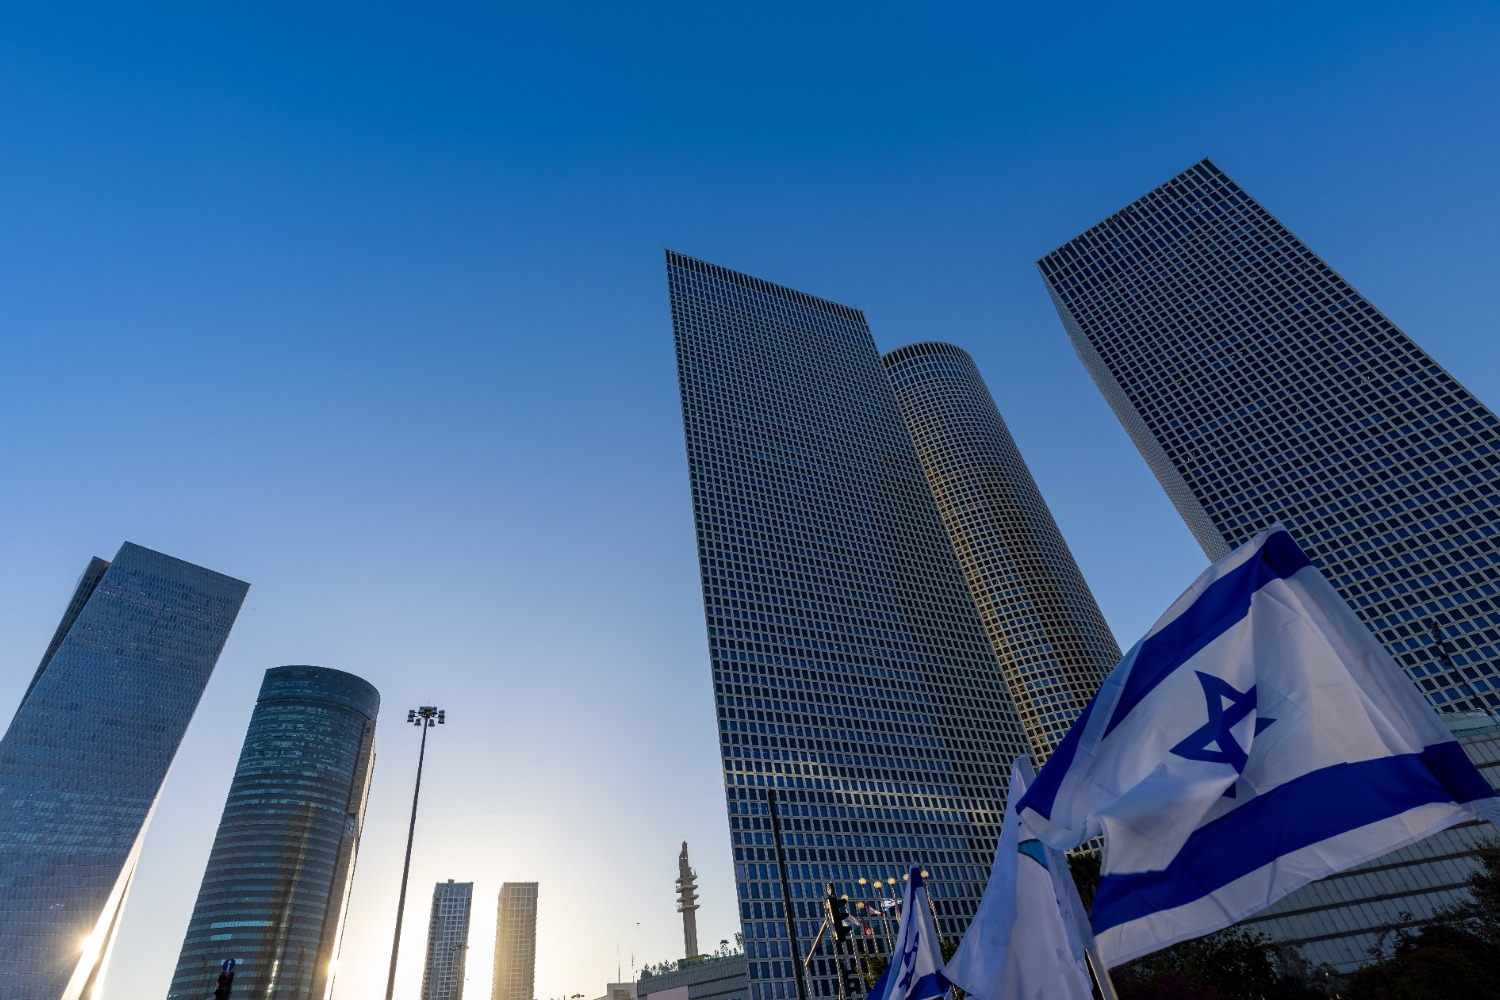 Агентство Moody's оставило без изменений кредитный рейтинг Израиля и его негативный прогноз